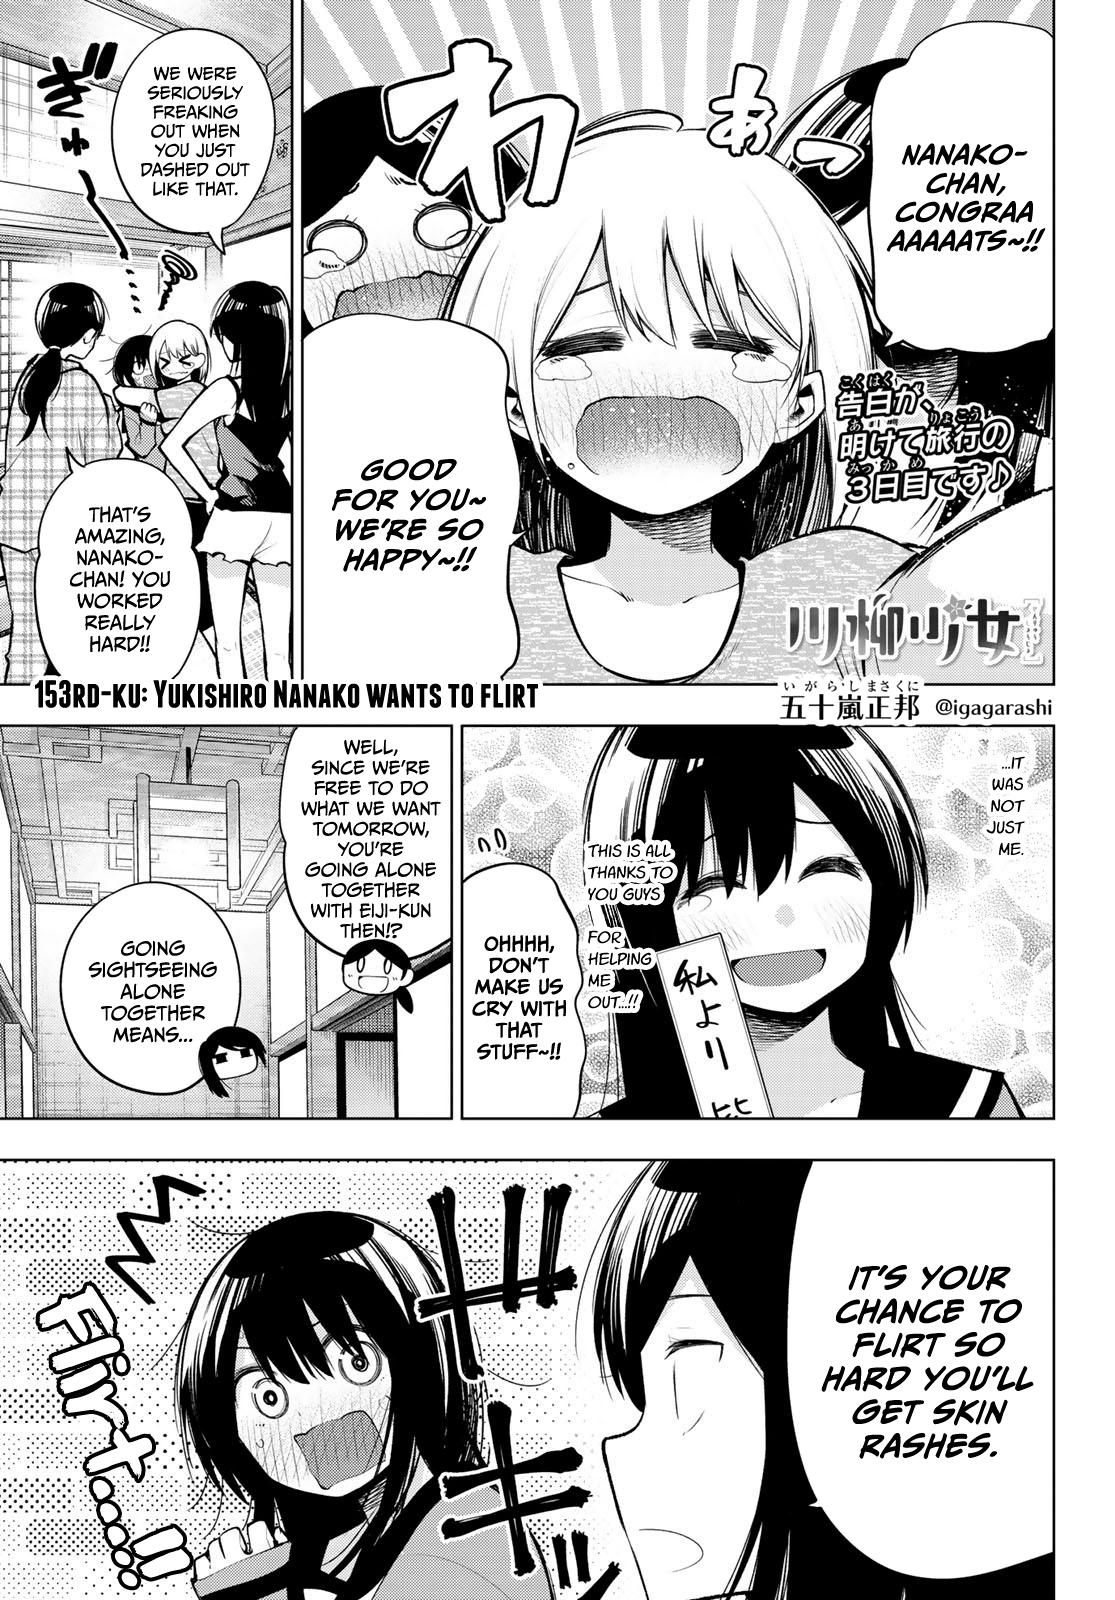 Read Senryuu Shoujo Vol 12 Chapter 153 Yukishiro Nanako Wants To Flirt On Mangakakalot